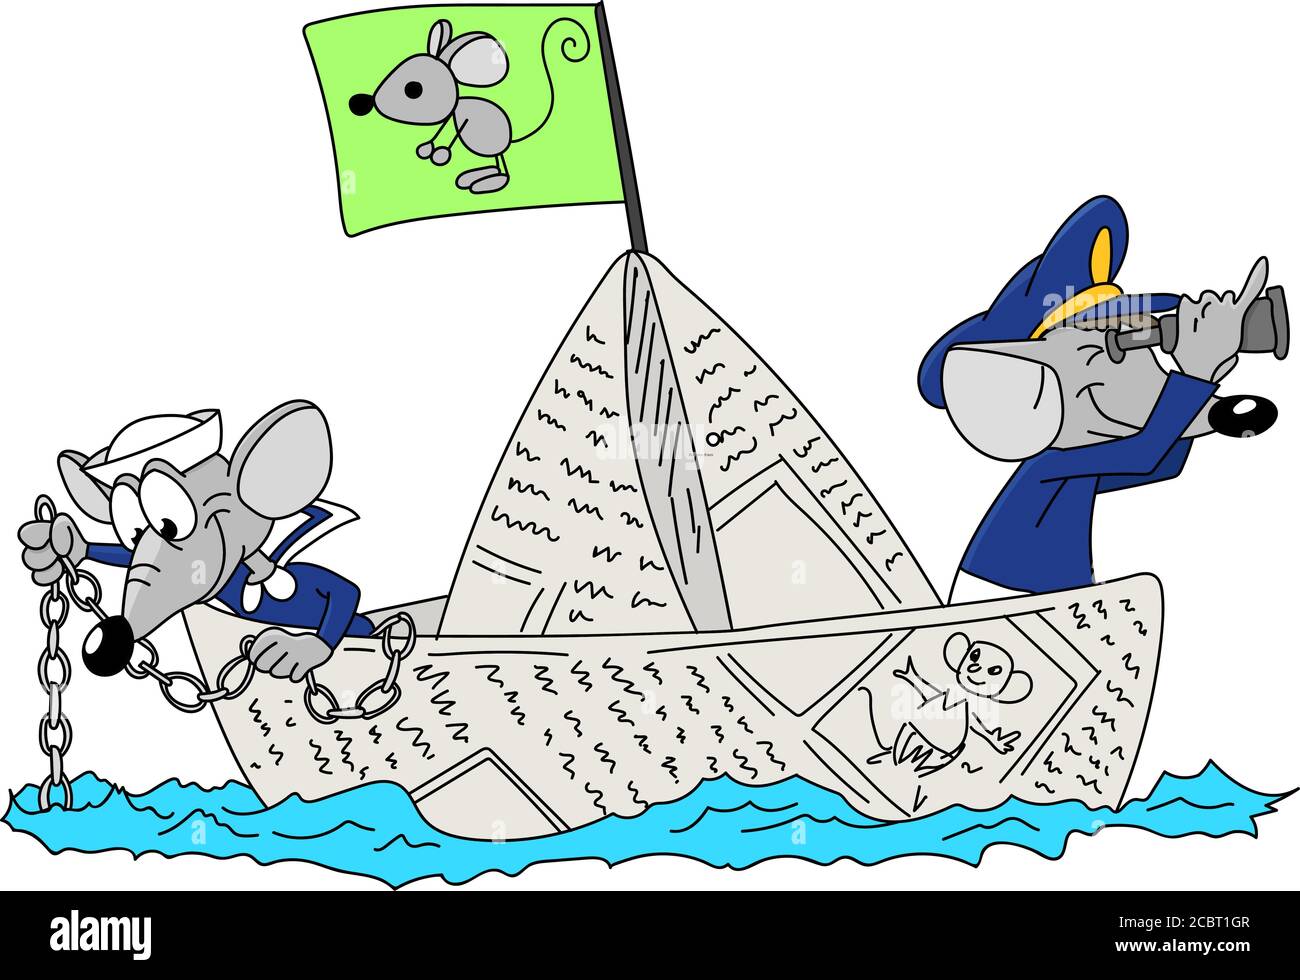 Zwei Cartoon-Mäuse segeln zusammen auf einem Papierboot Vektor Illustration für Kinder Stock Vektor